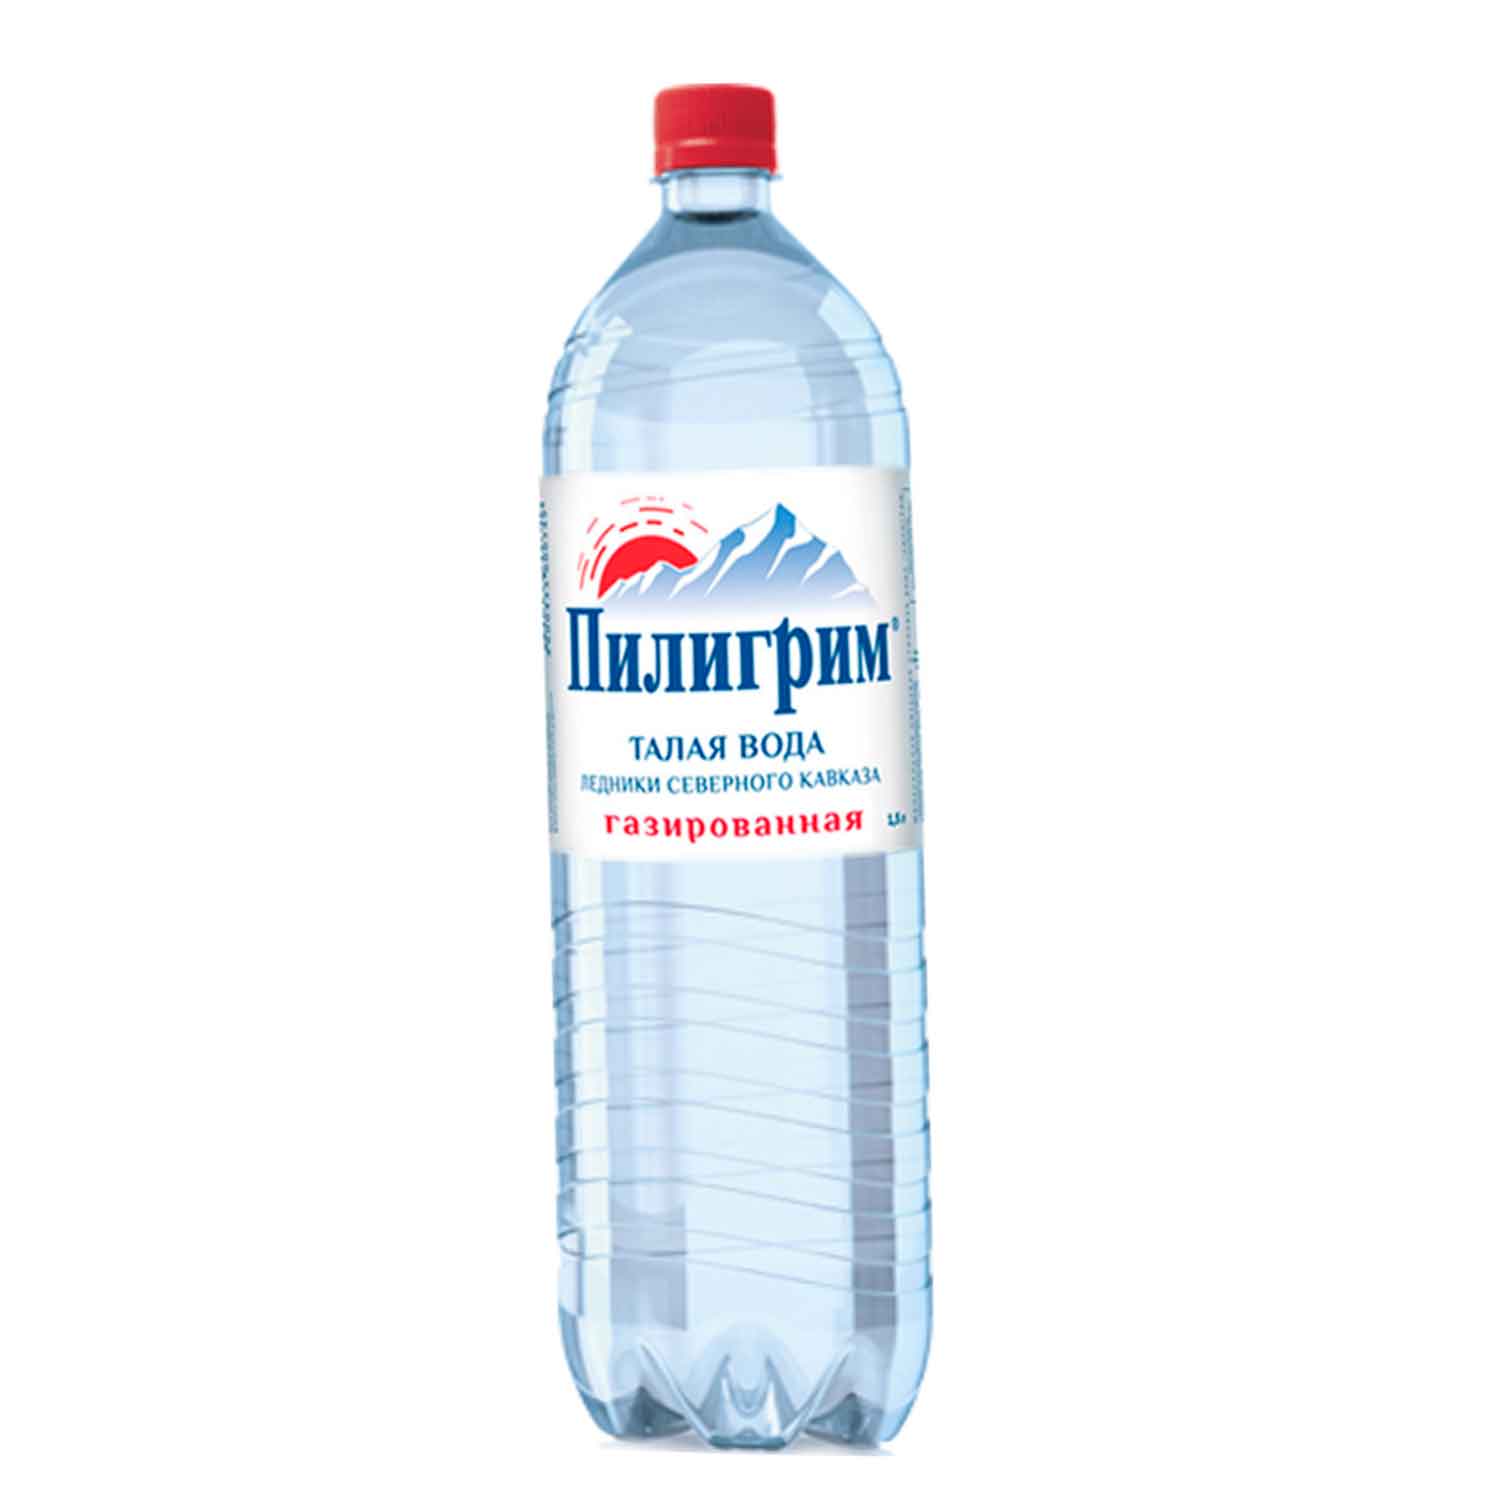 Газированная вода пилигрим. Пилигрим ГАЗ 0,5л./12шт. ПЭТ. Пилигрим 1.5 литра. Вода питьевая ГАЗ Пилигрим 0,5л ПЭТ. Минеральная вода Пилигрим газированная.